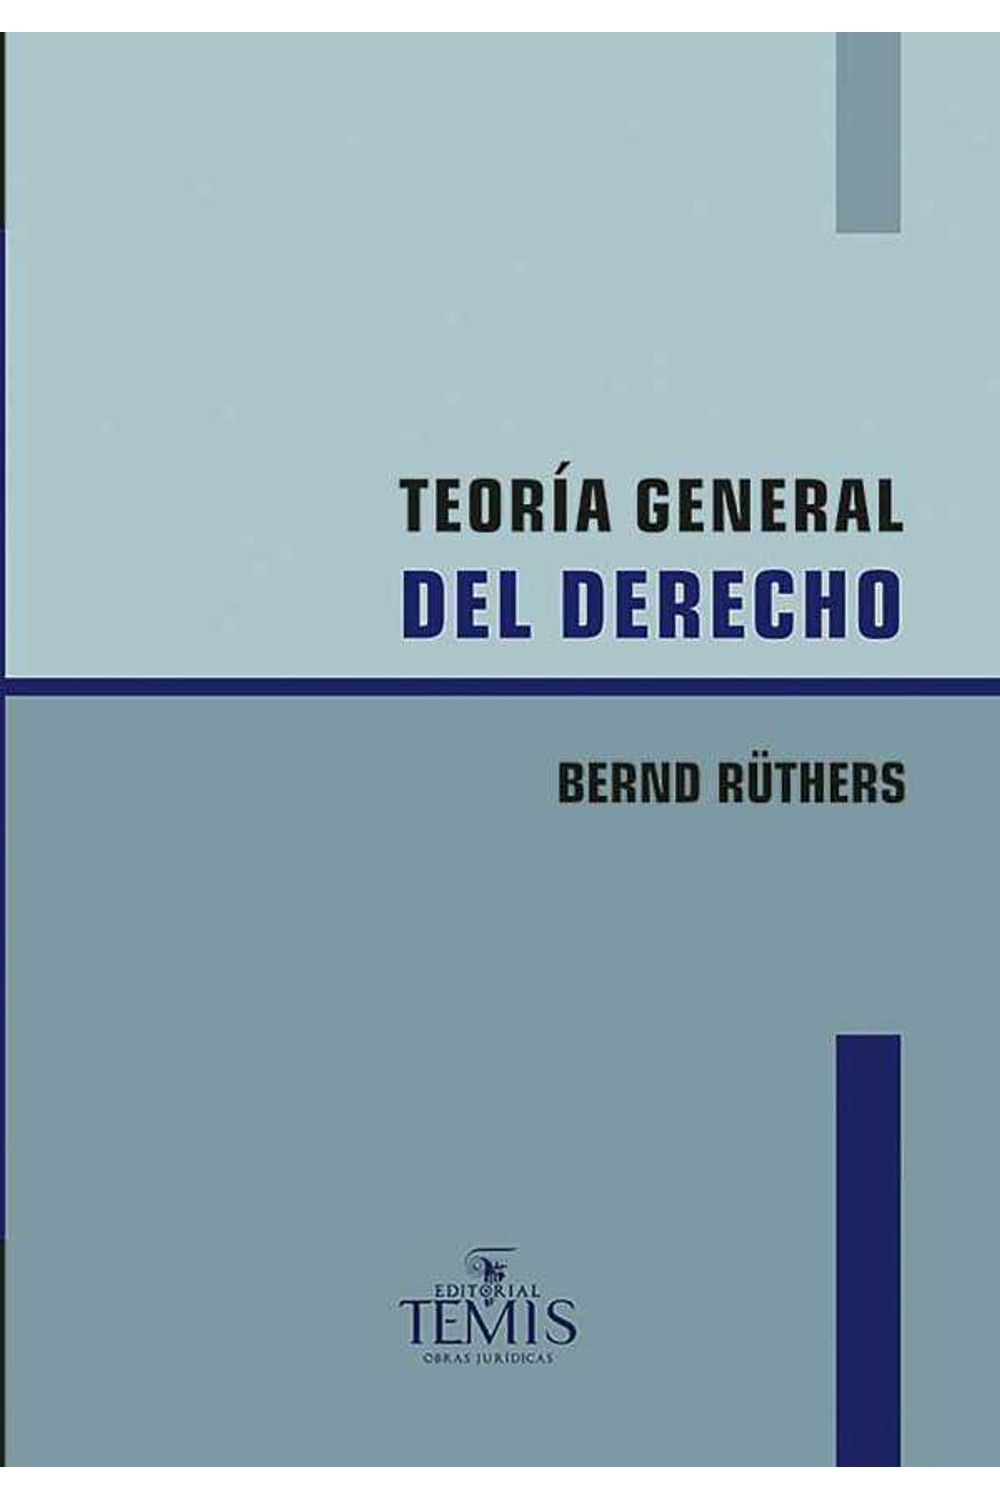 bw-teoriacutea-general-del-derecho-temis-9789583514173